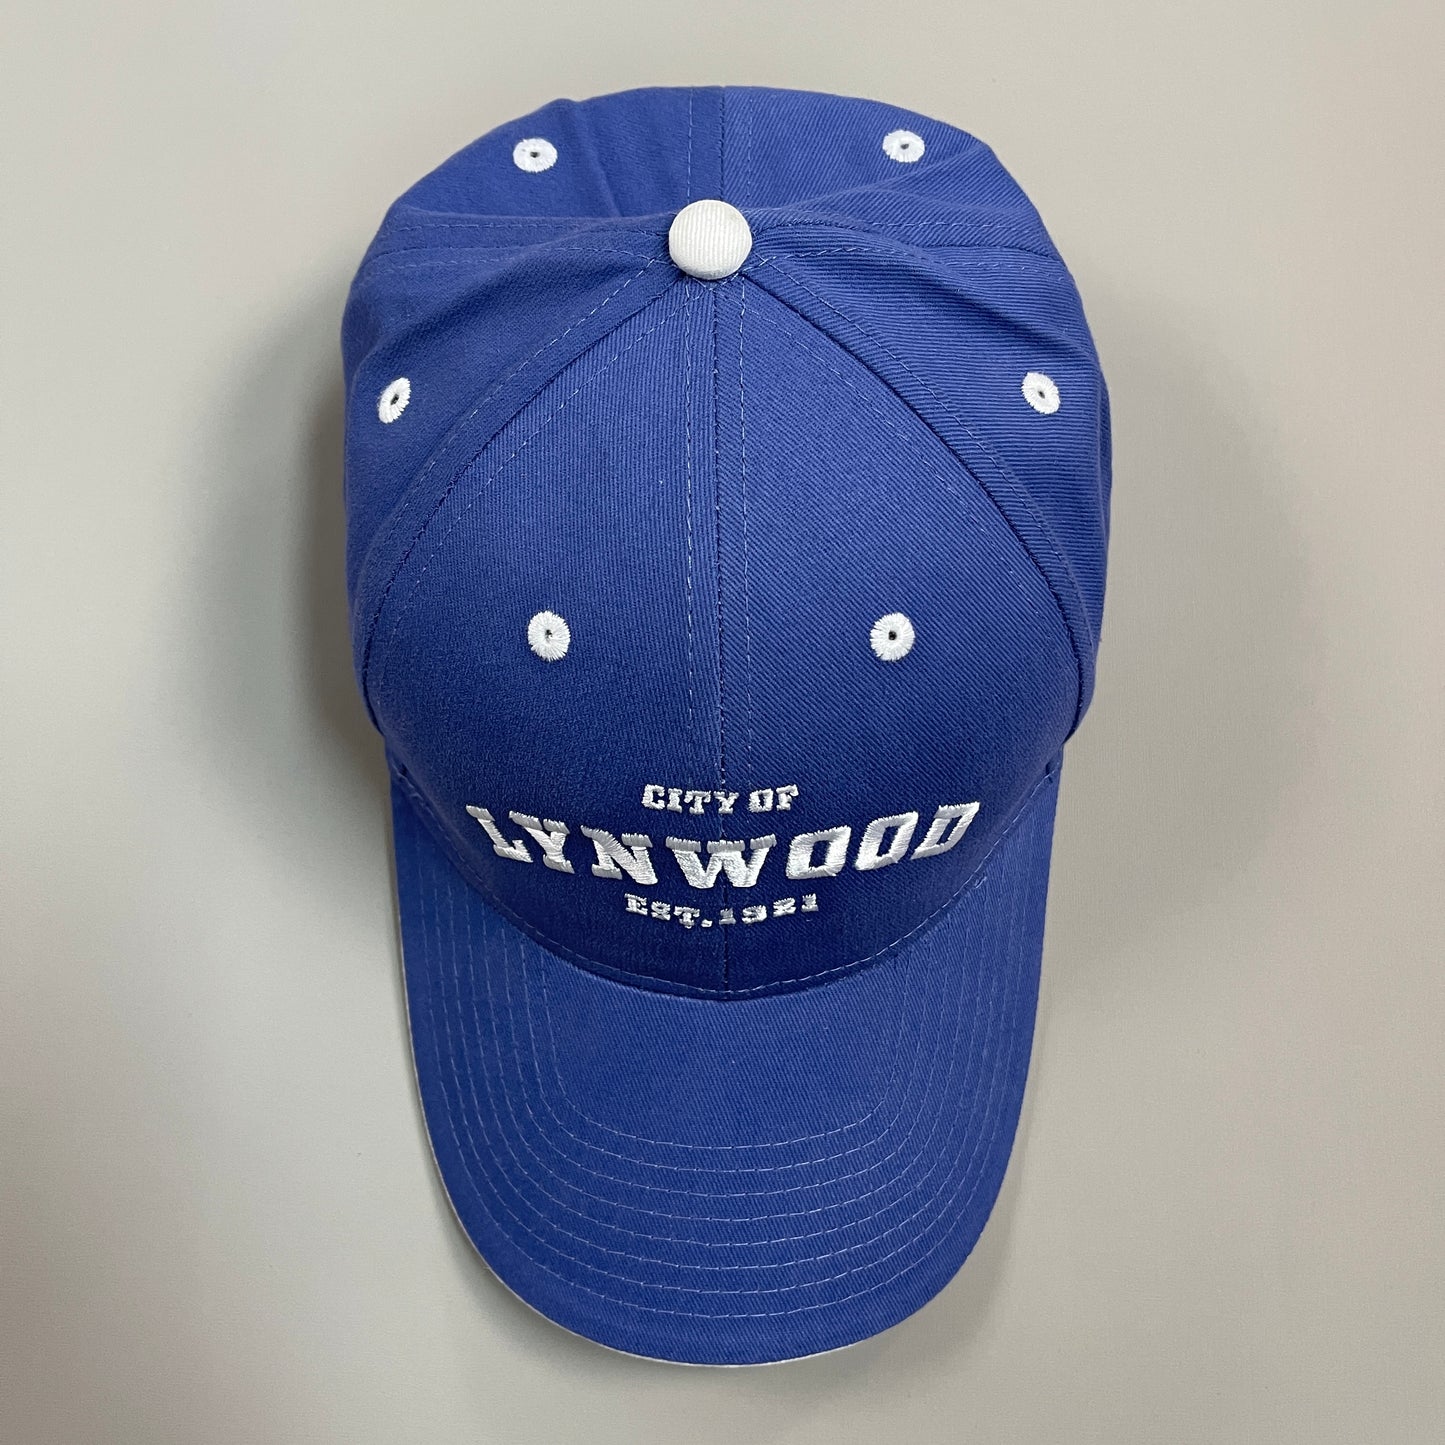 LYNWOOD "City Of Lynwood Est. 1921" Baseball Hat One Size Blue (New)